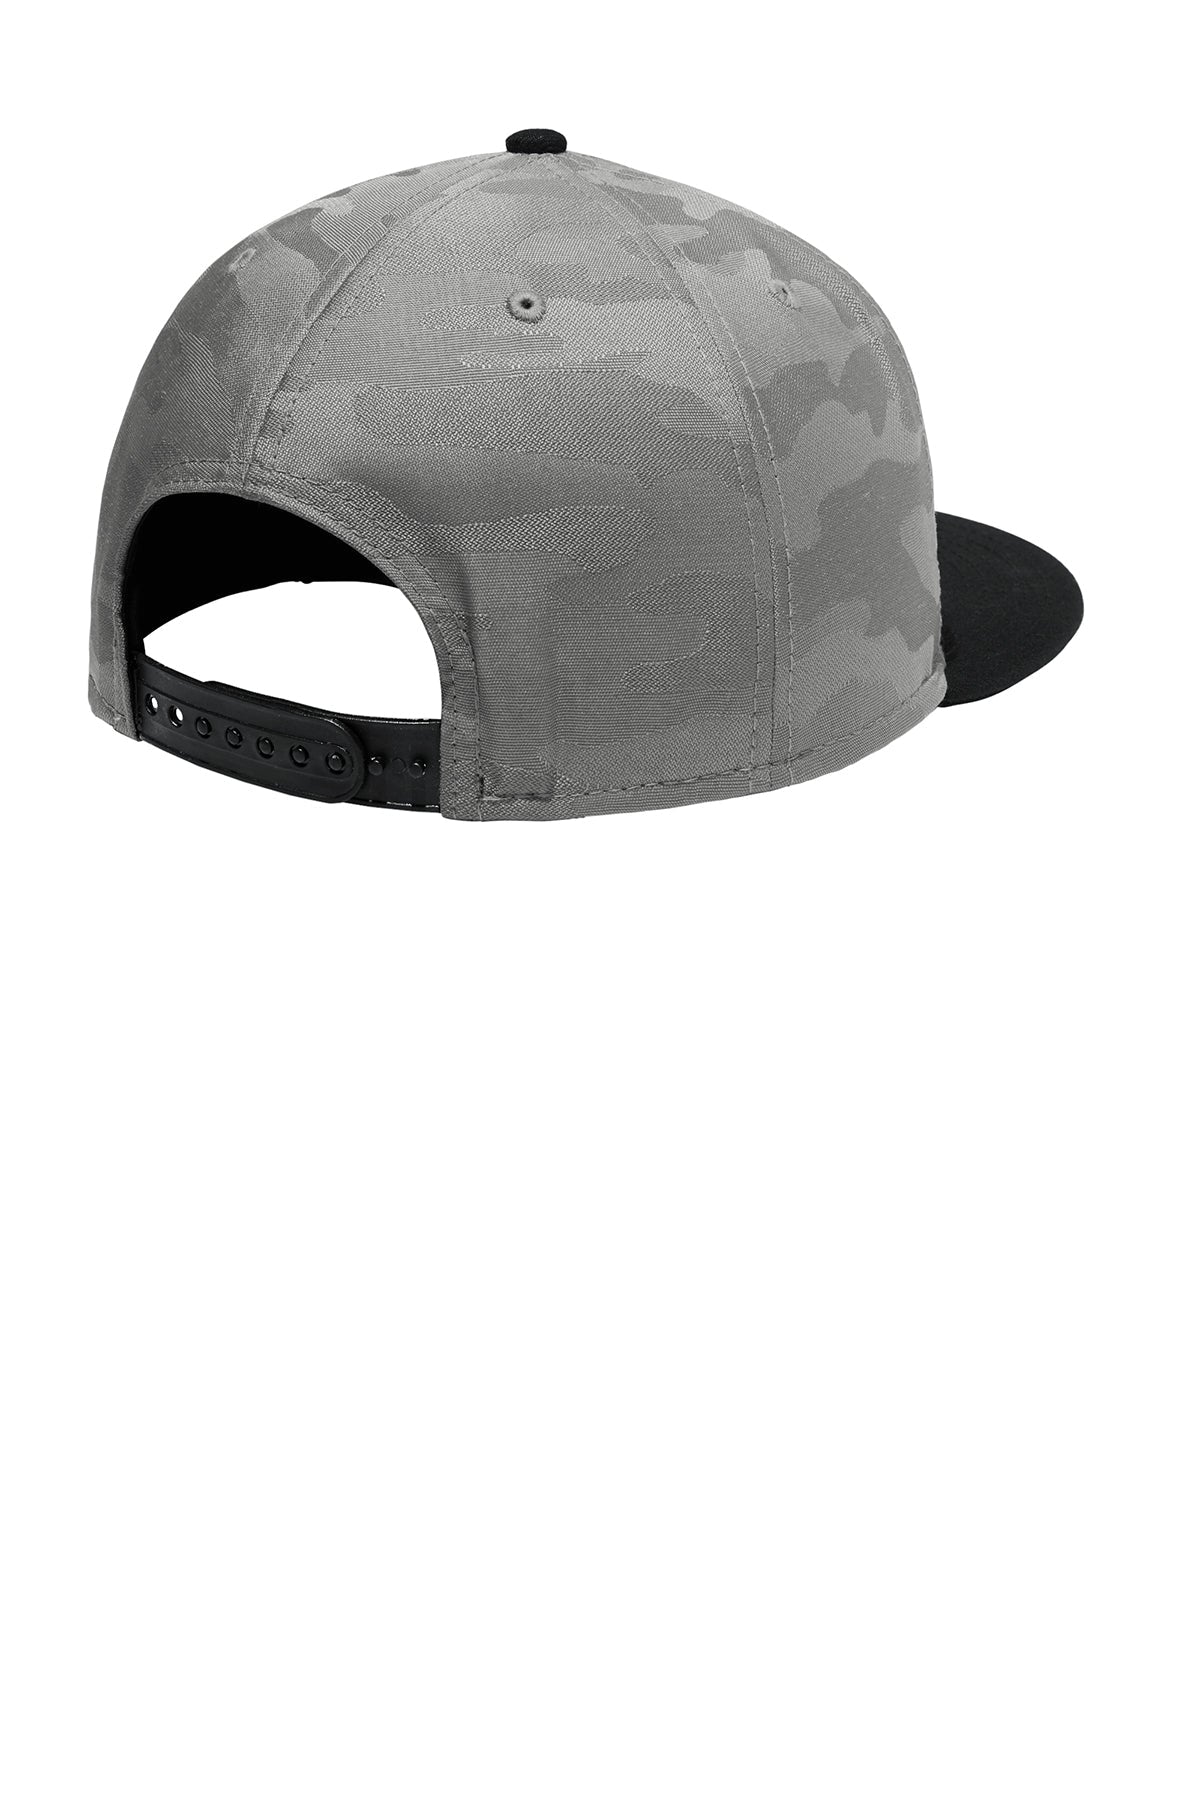 New Era Camo Flat Bill Snapback Custom Caps, Black/ Rainstorm Grey Camo